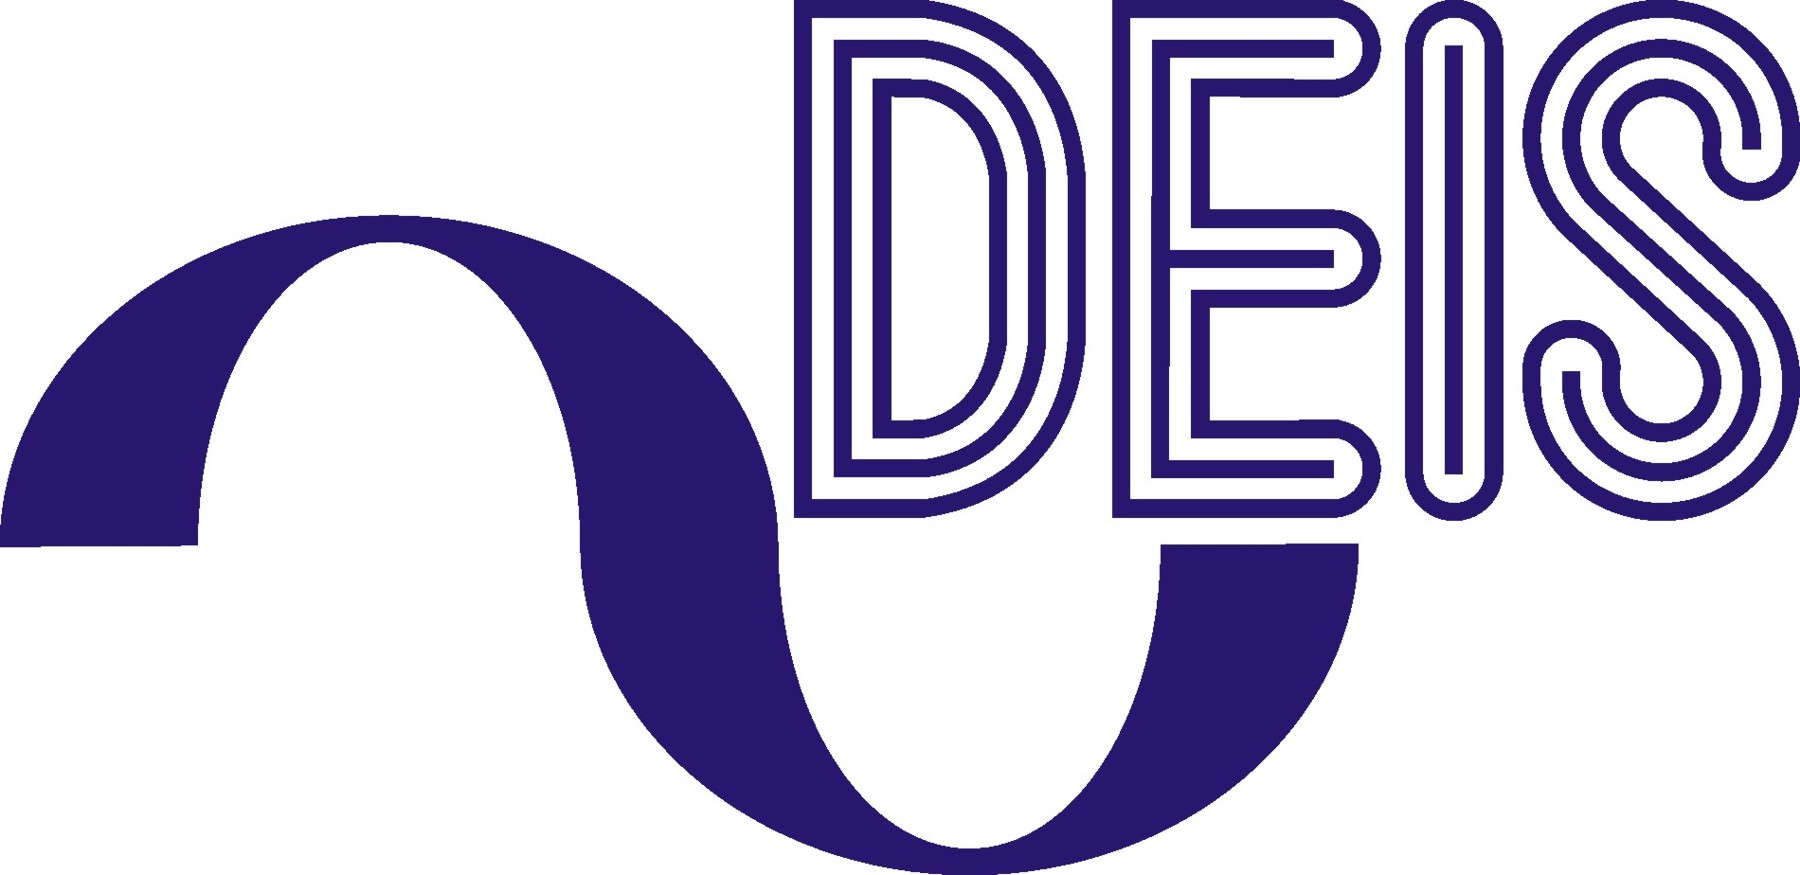 IEEE DEIS